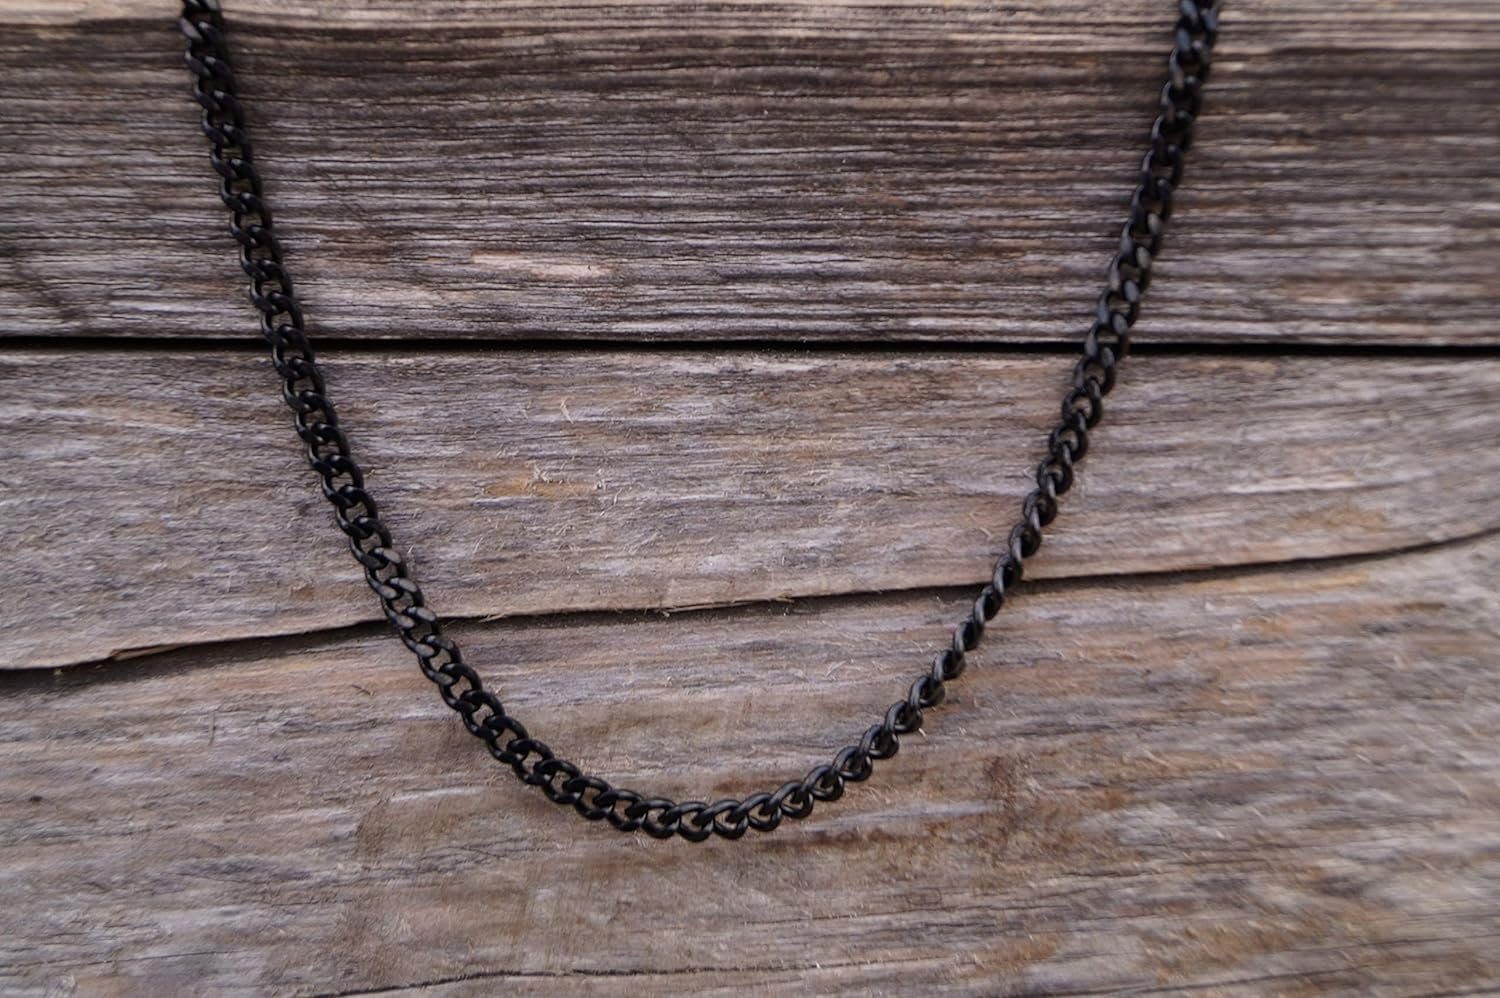 Made by Nami Panzerkette Hochwertige Herren Link Robuste & Königskette, Edelstahl aus Schwarz Cuban Damen Halskette Halskette Gliederkette Chain